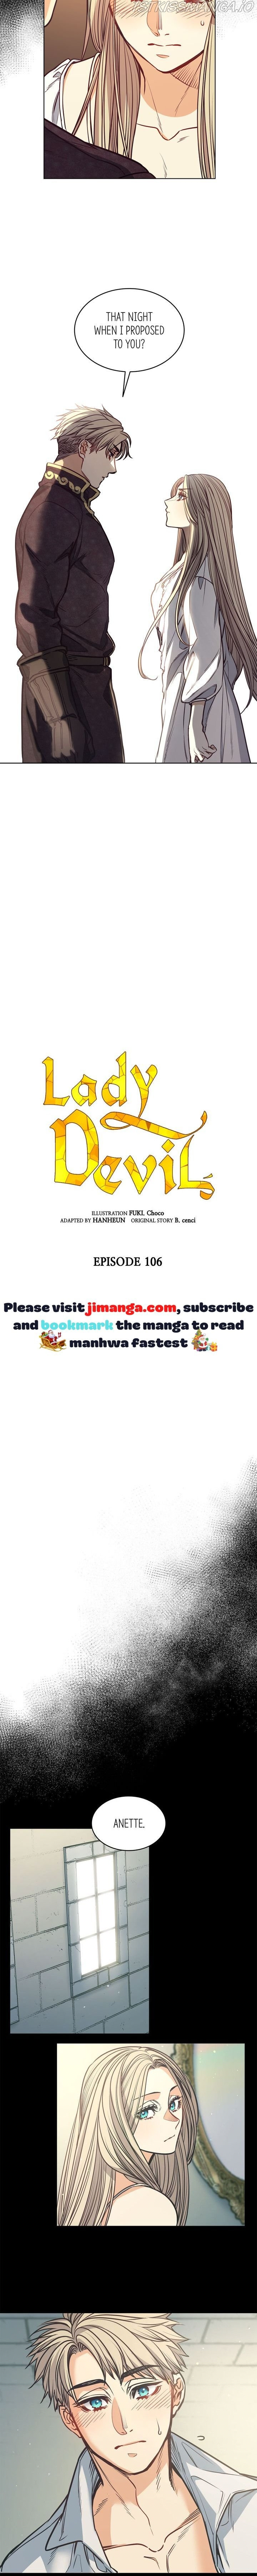 The Devil - Page 3